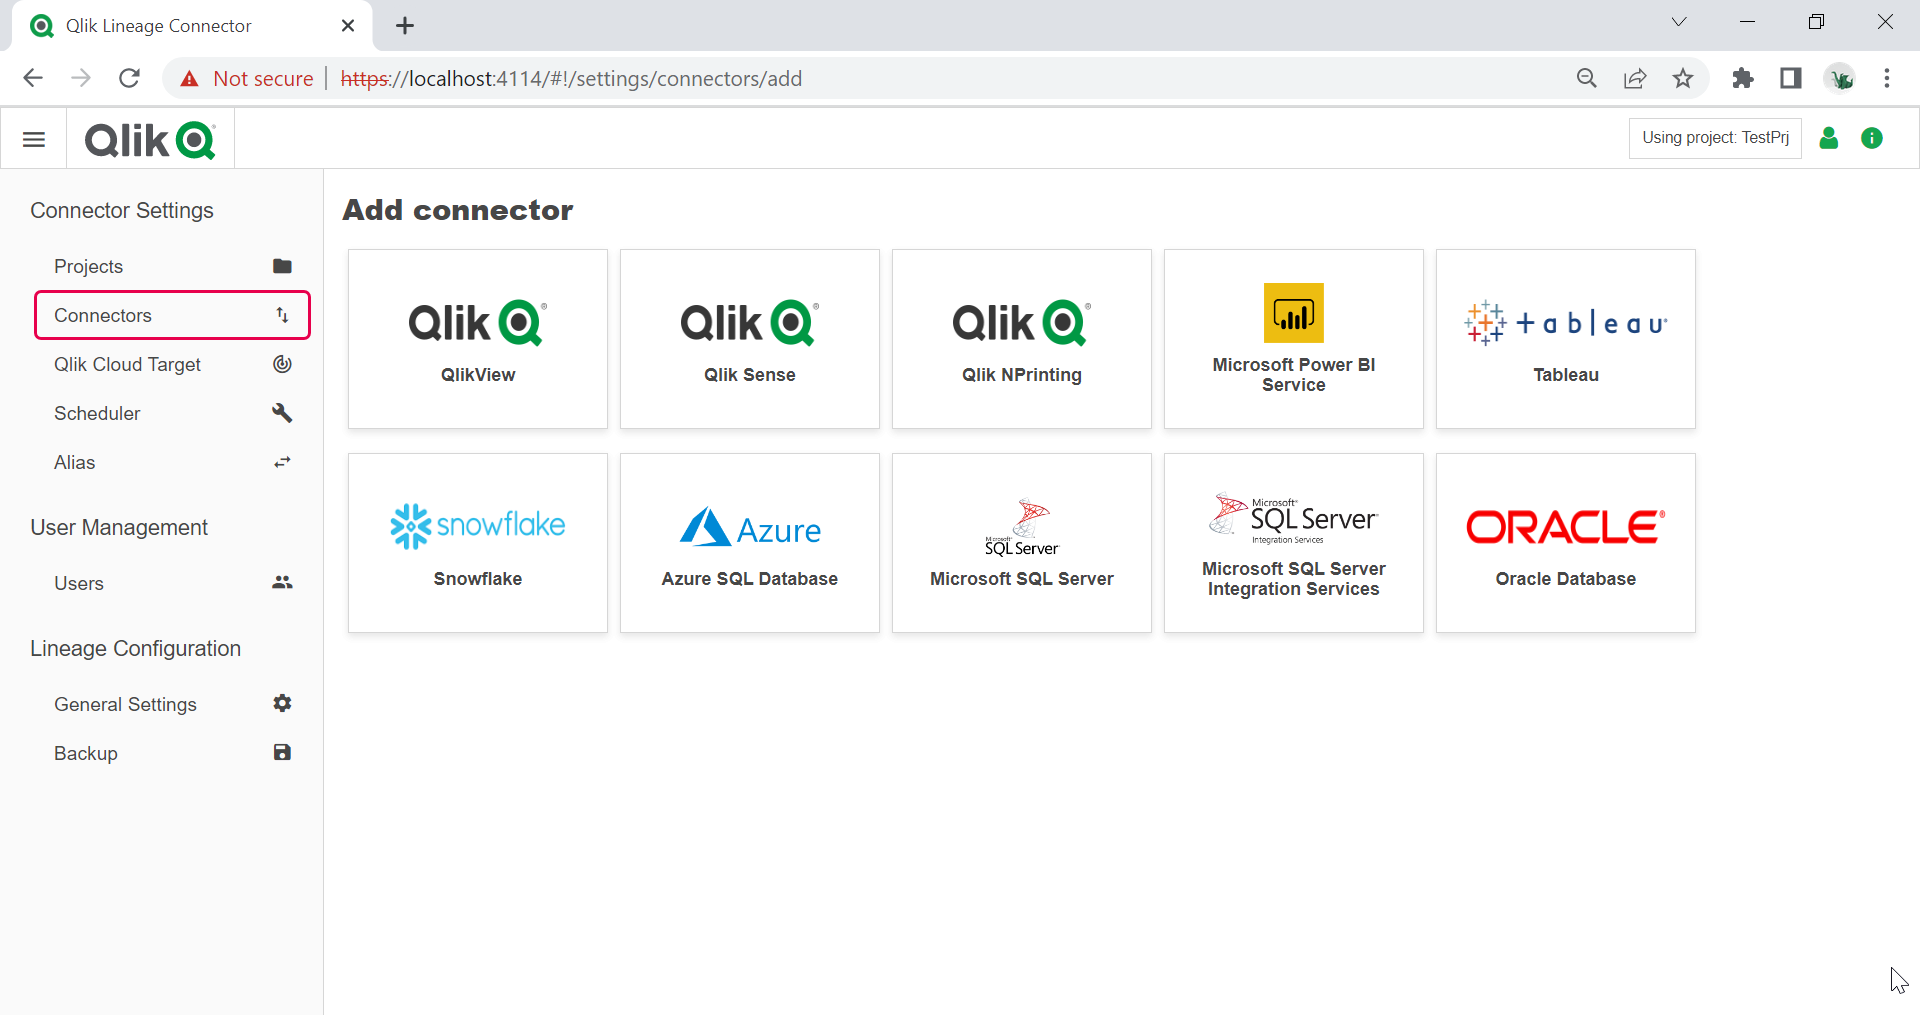 Qlik Lineage Connectors BI tools and data sources